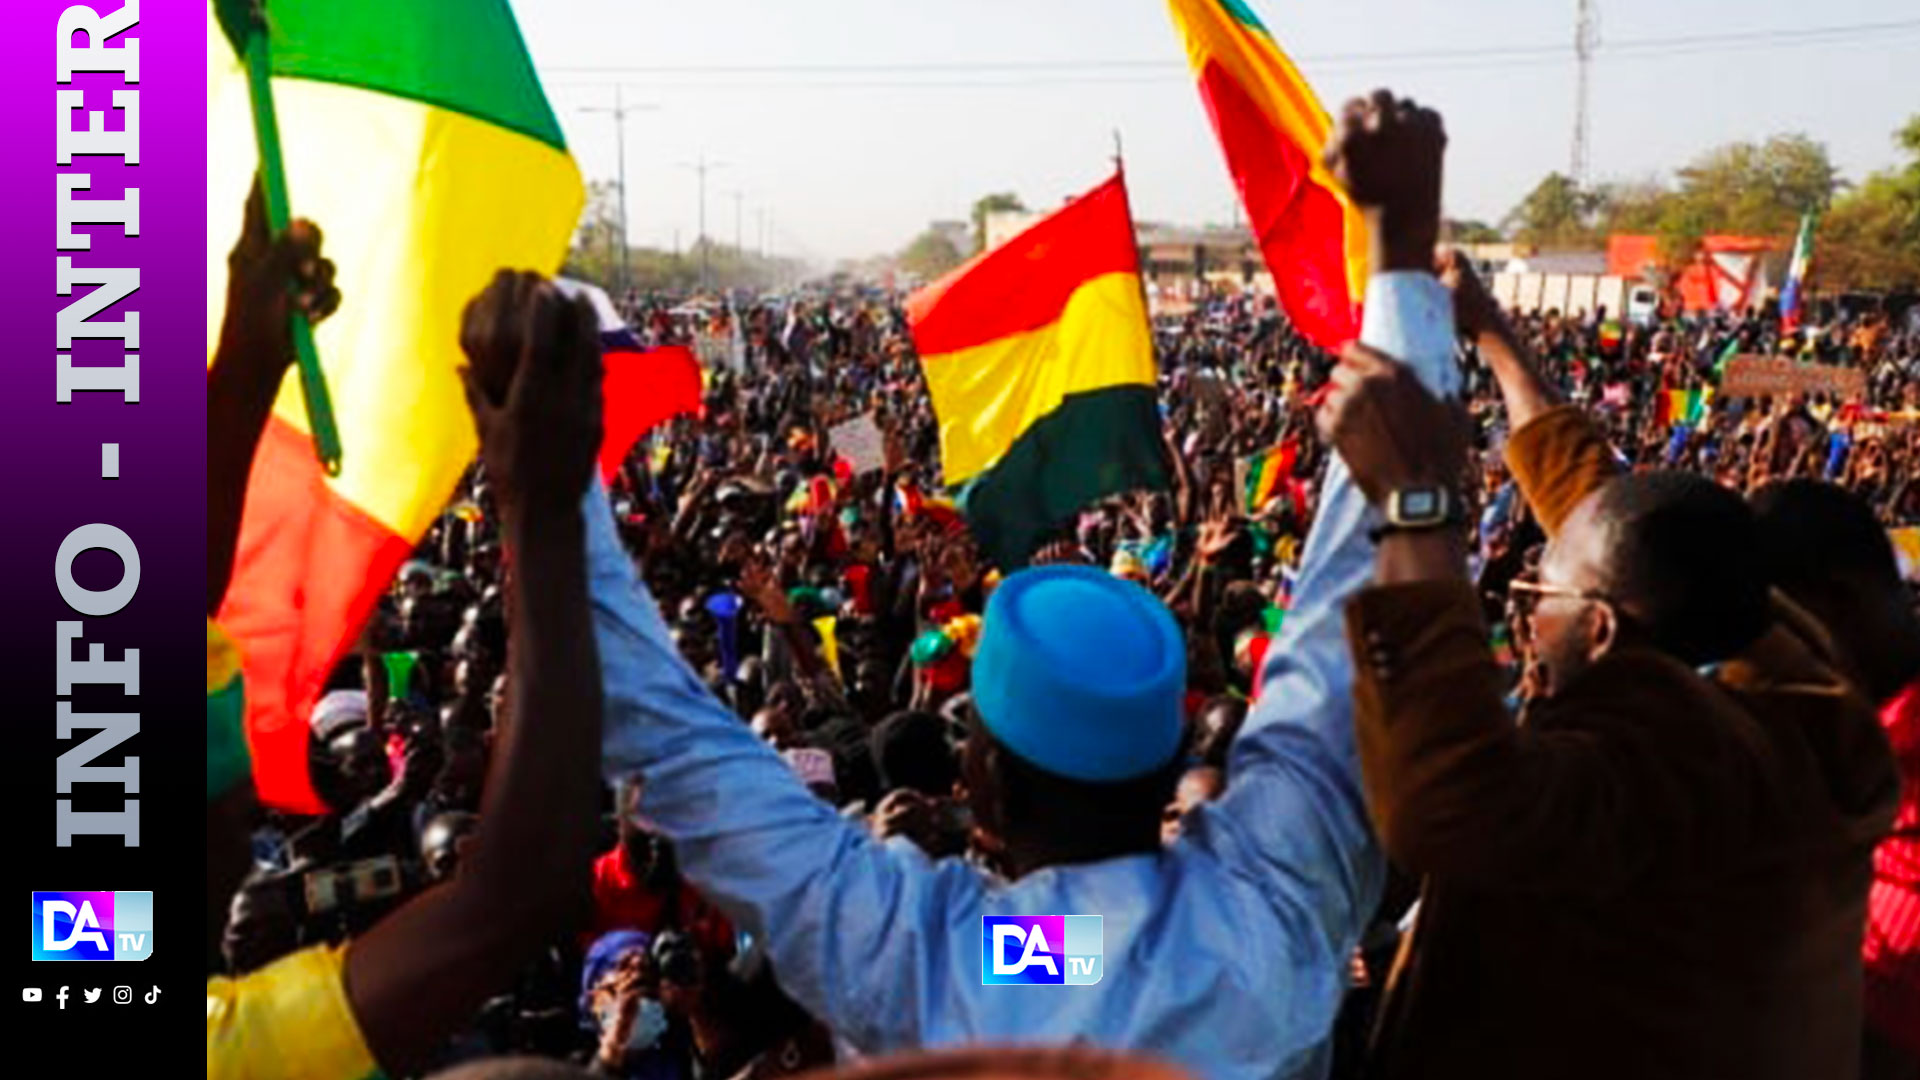 Mali: La presse désormais interdite de couvrir les activités des partis politiques